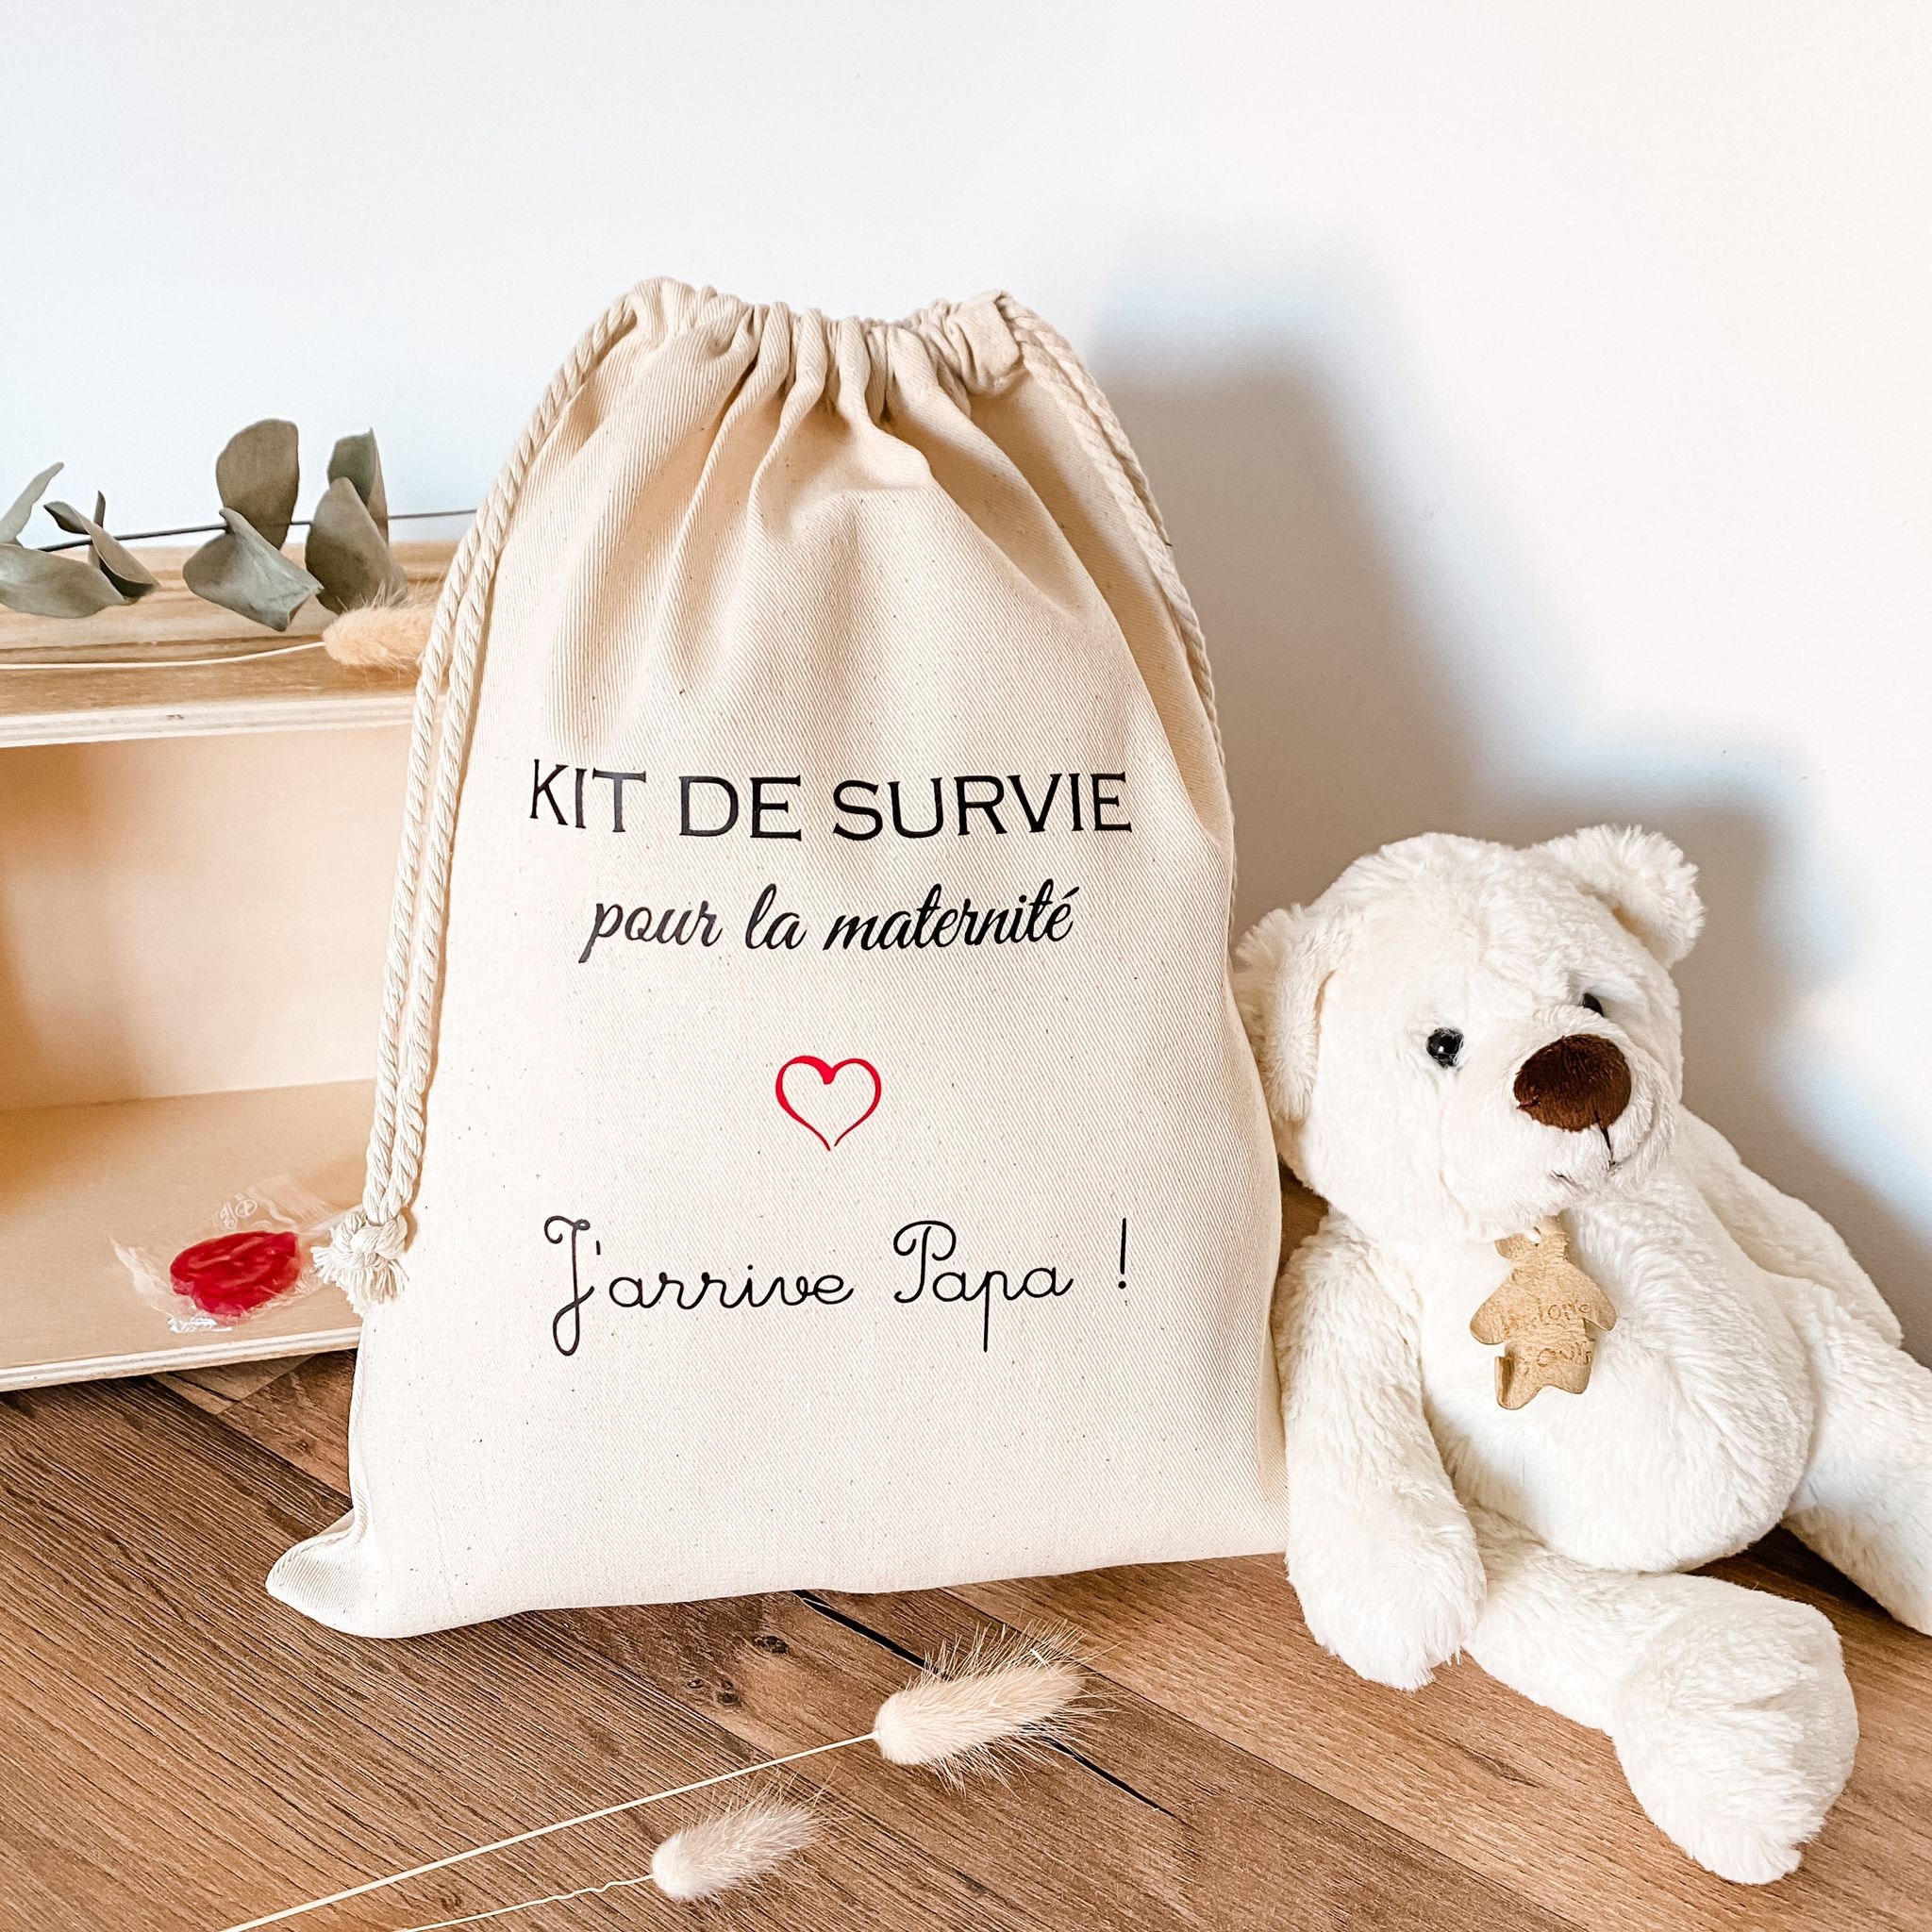 Nouveau kit de survie de maman -  France